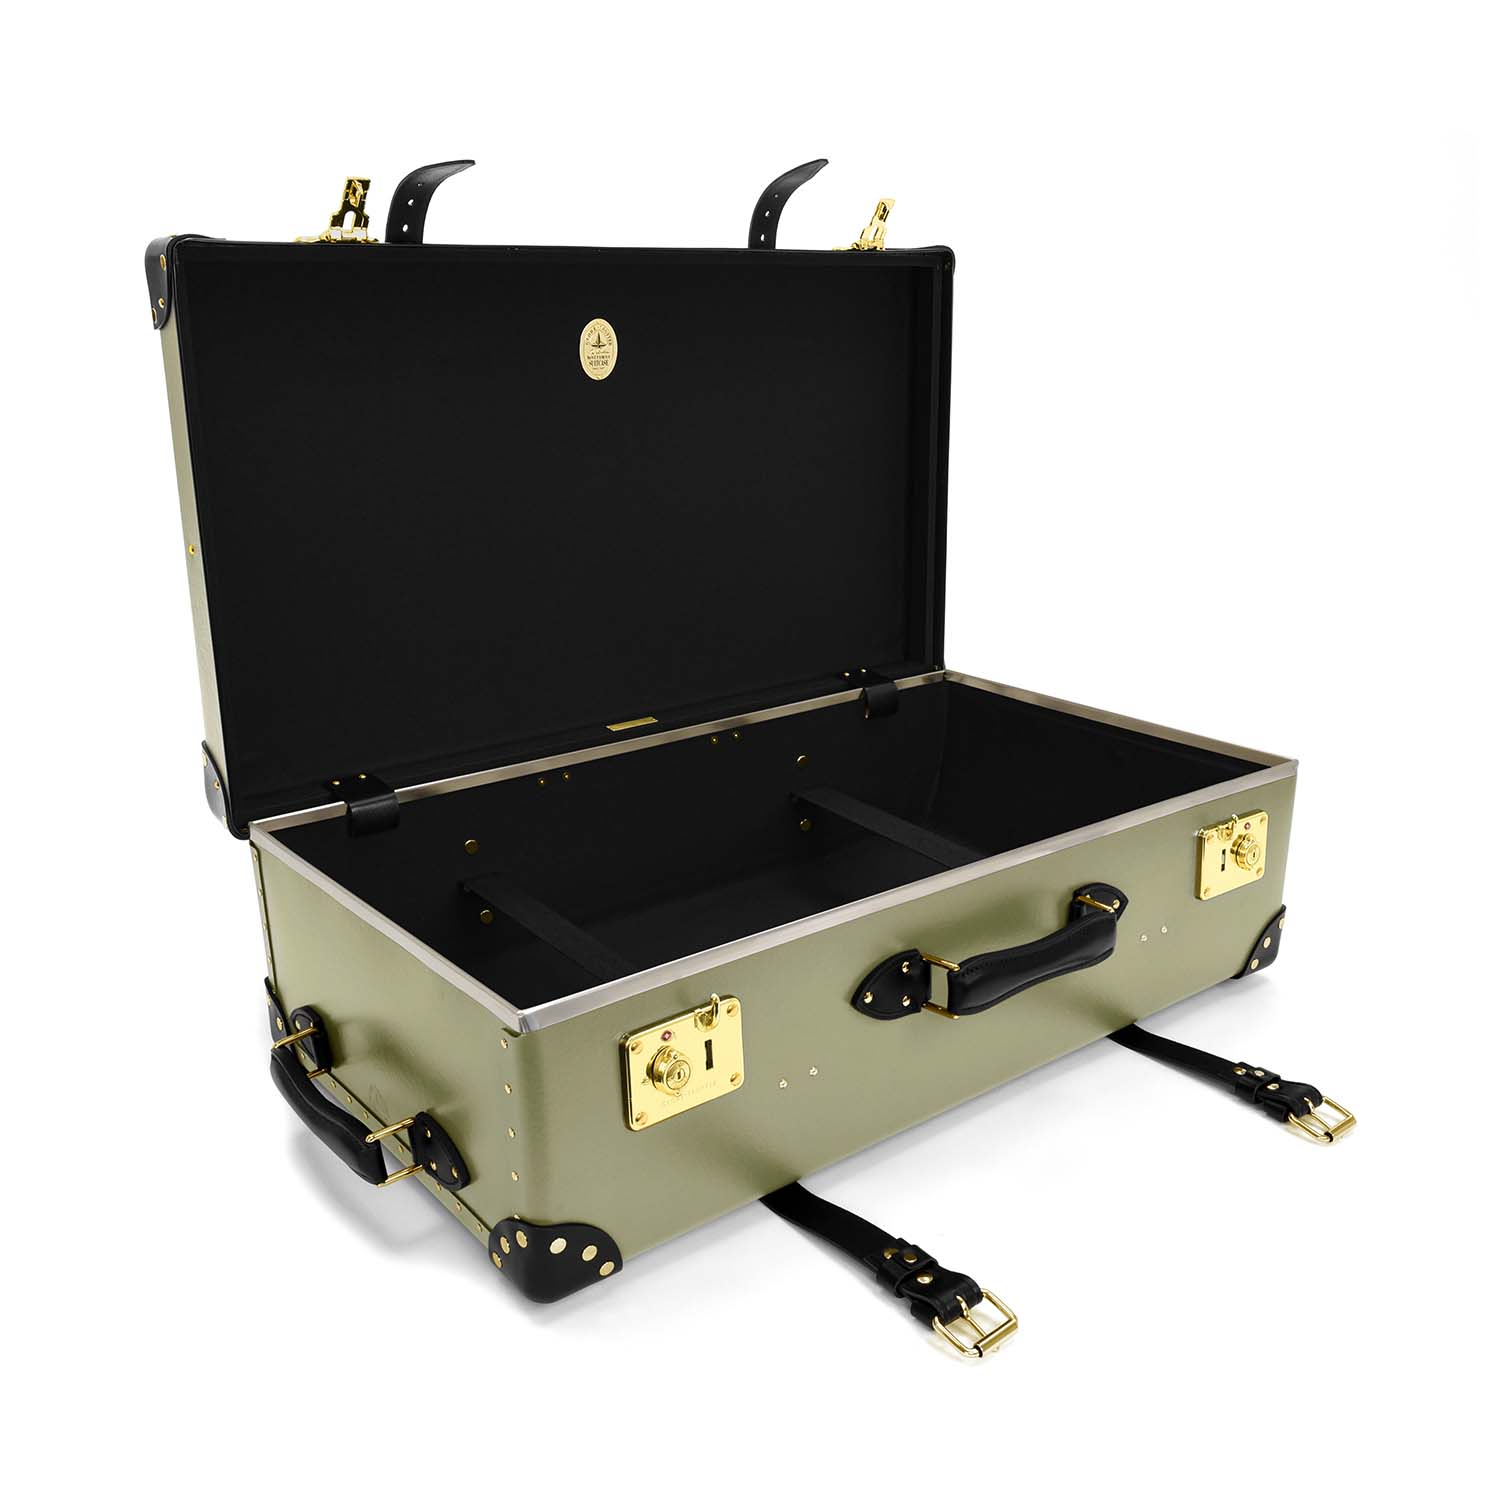 センテナリー · ラージスーツケース | オリーブ/ブラック/ゴールド